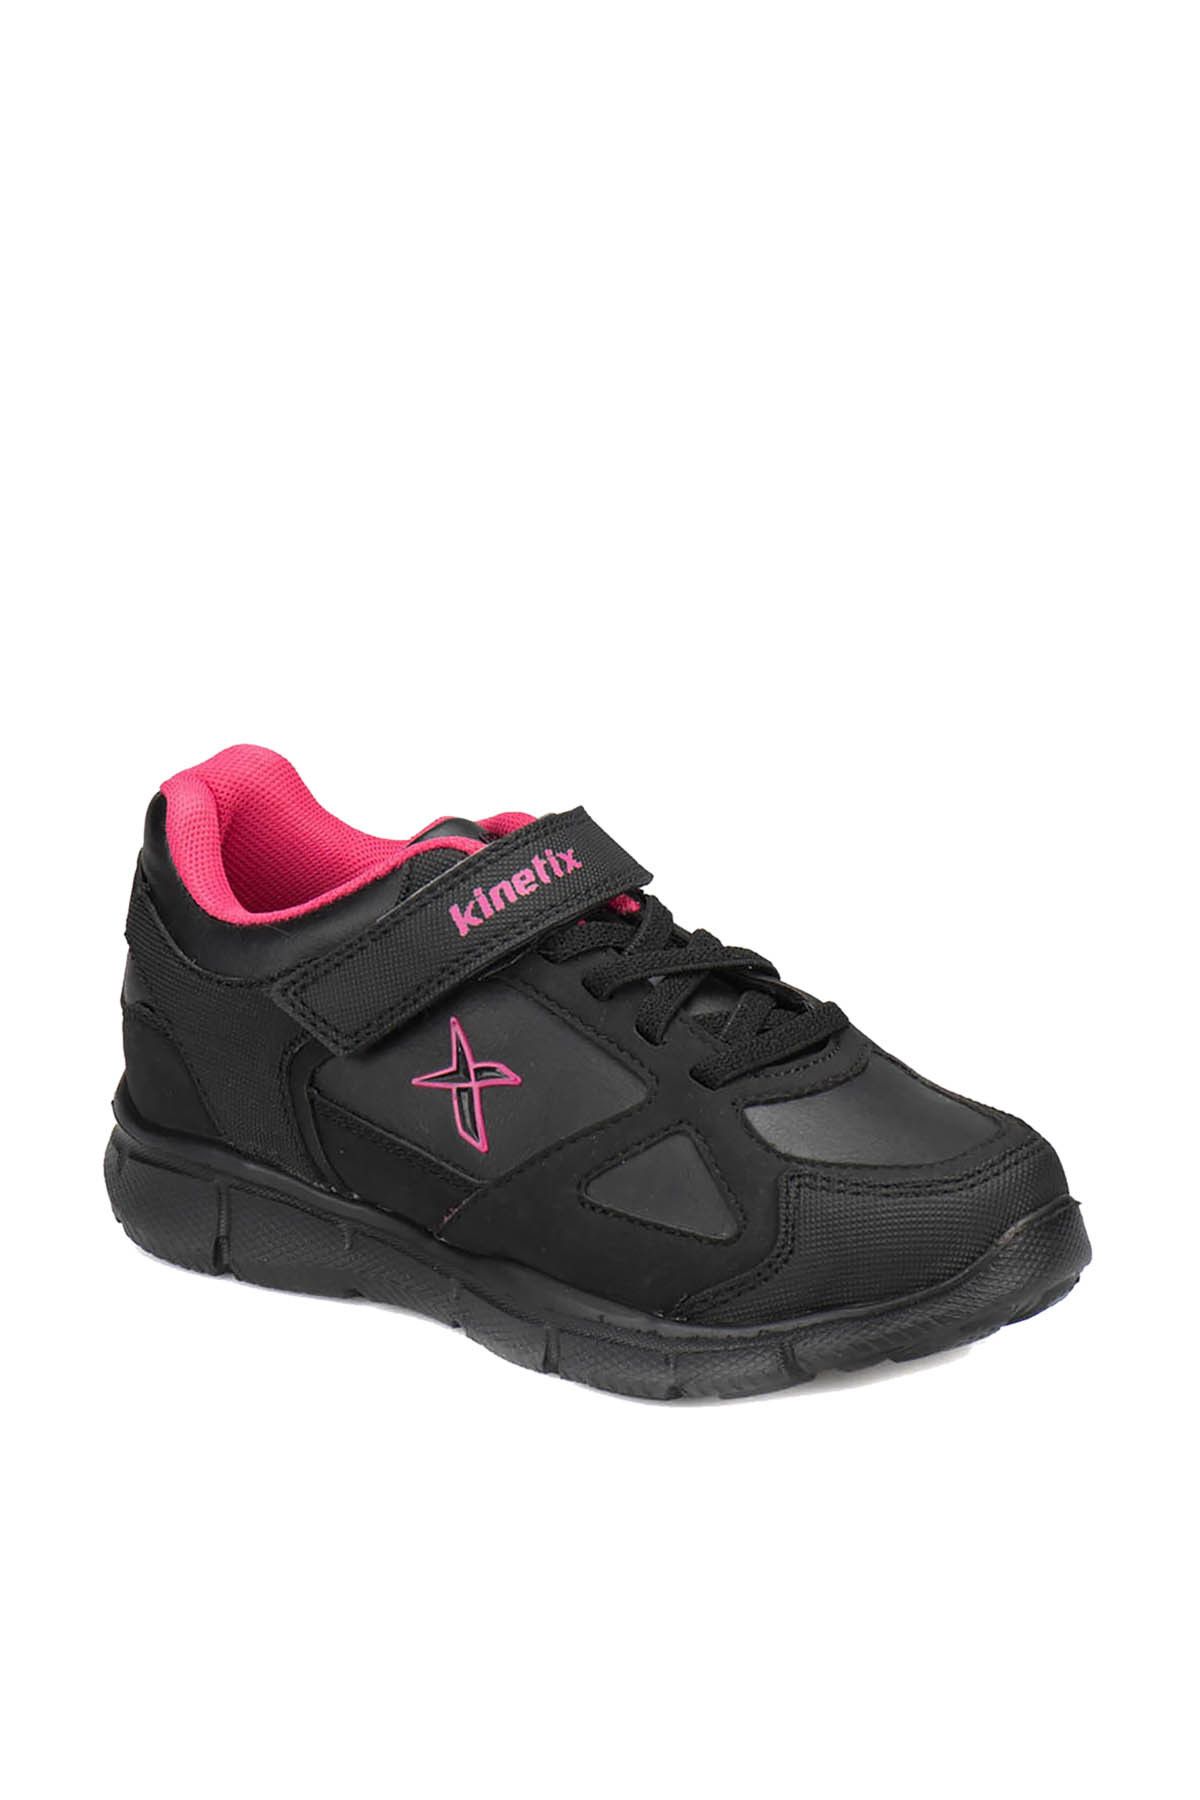 Kinetix BULLET PU Siyah Fuşya Kız Çocuk Yürüyüş Ayakkabısı 100272767